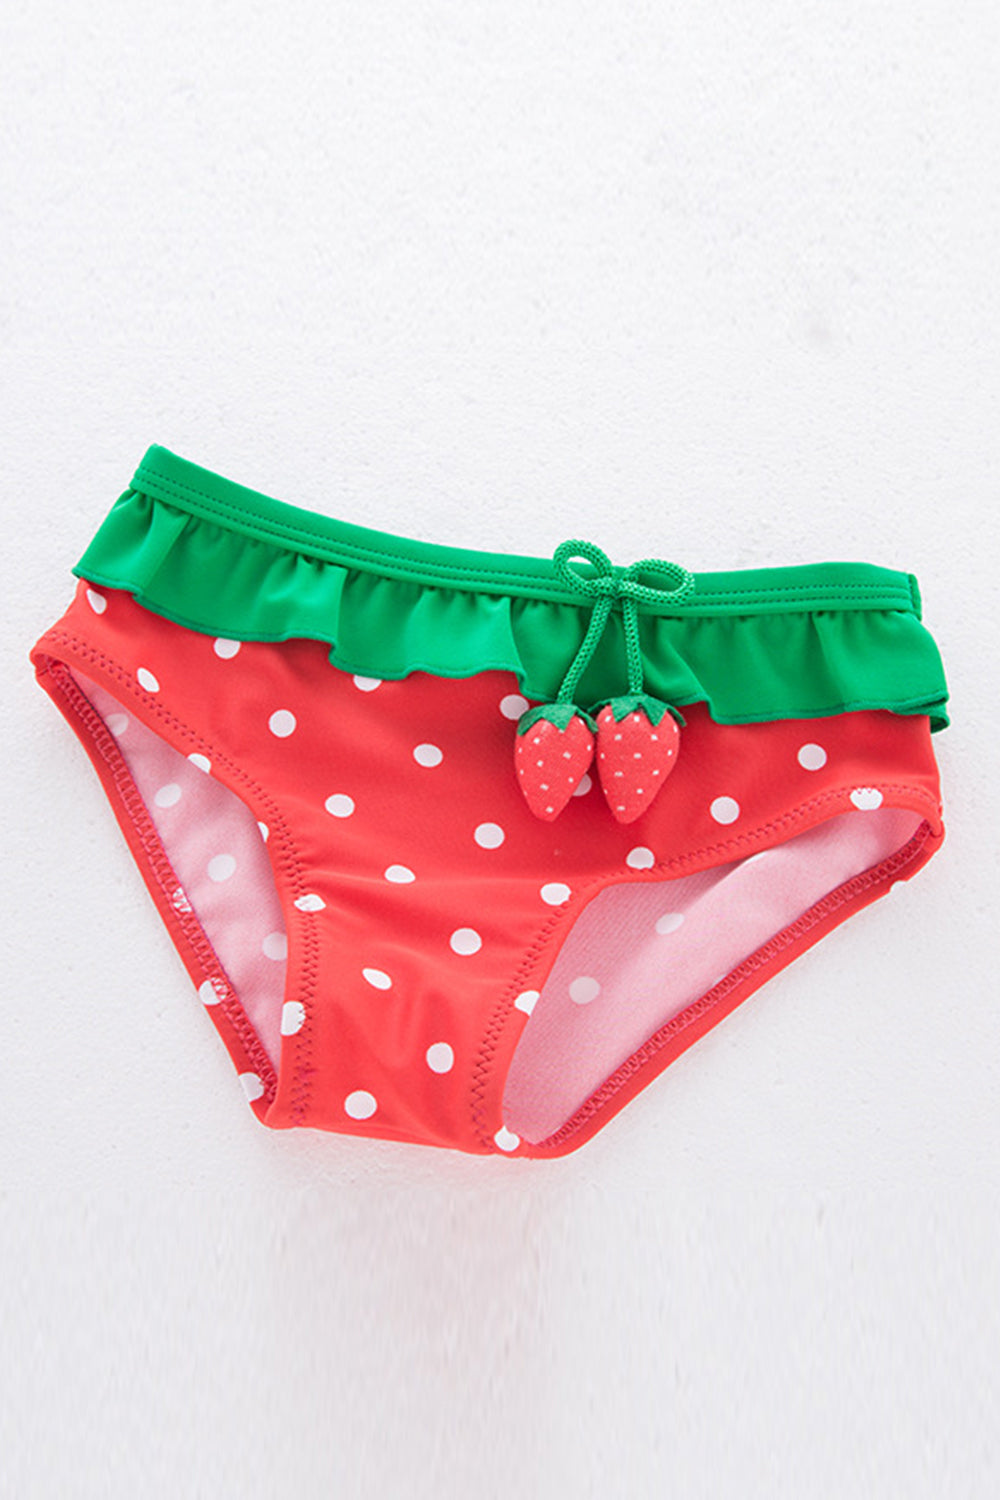 Iyasson Strawberry Printing Flounce Baby Girl Bikini Sets